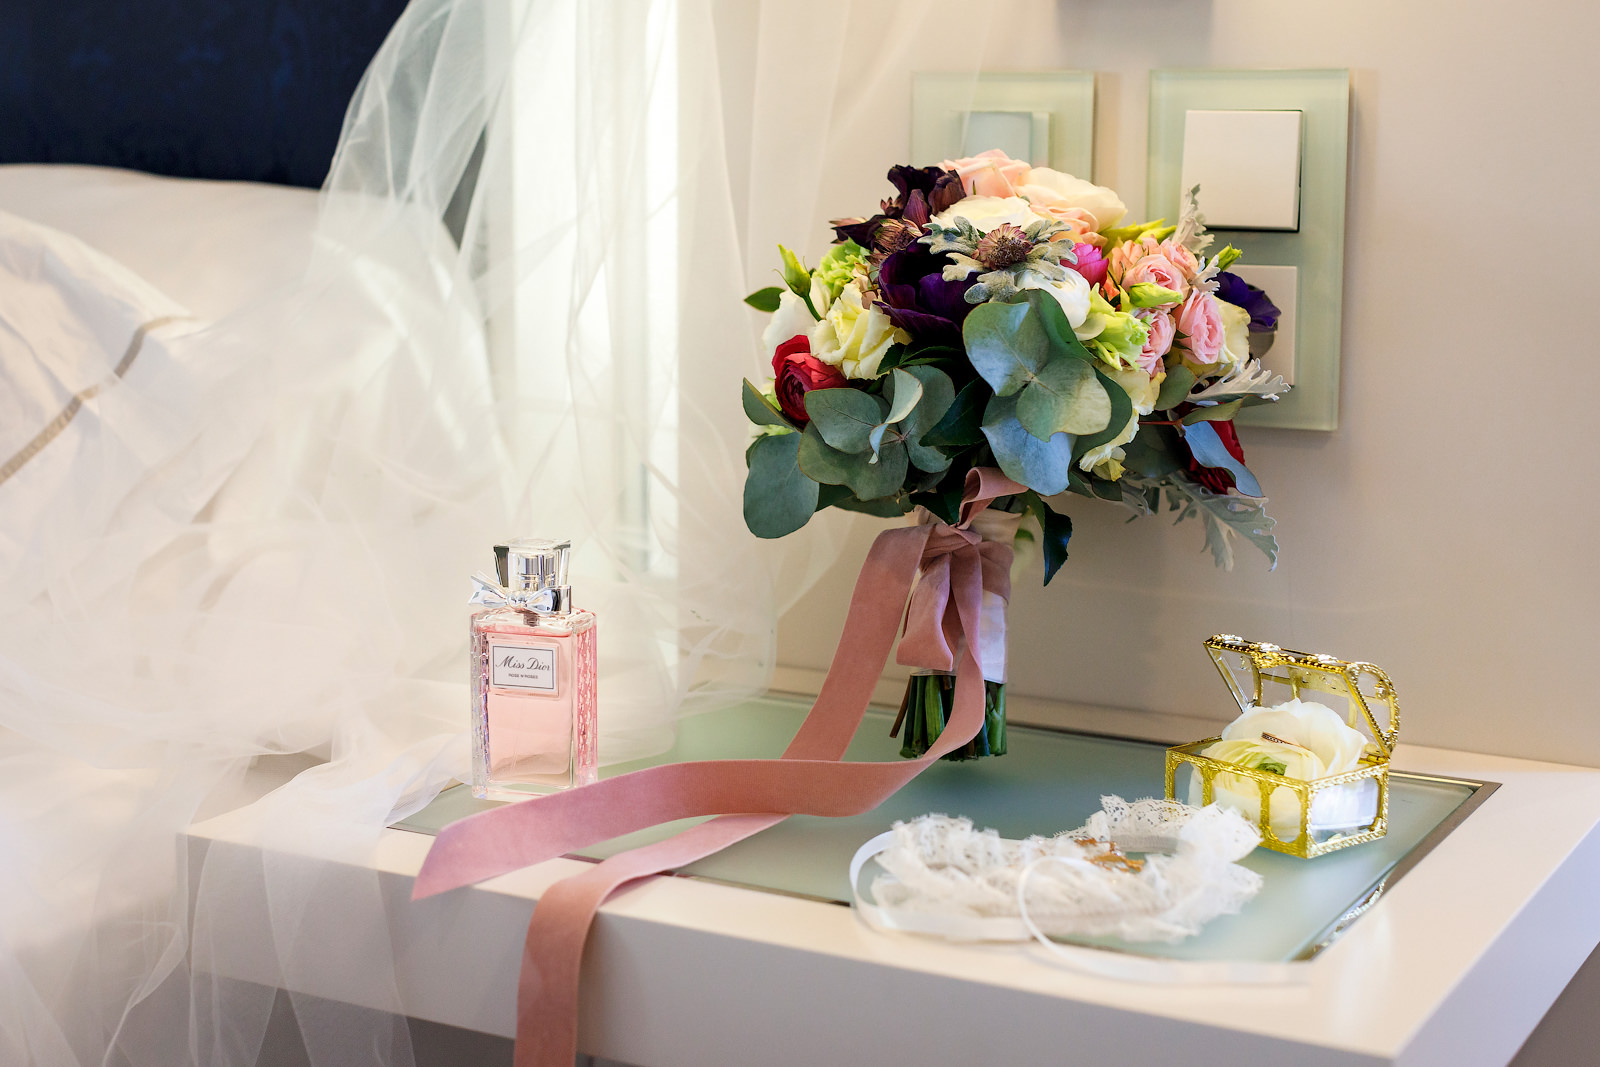 Ideen für ein Braut-Boudoir Fotoshooting im luxuriösen Hotelzimmer.